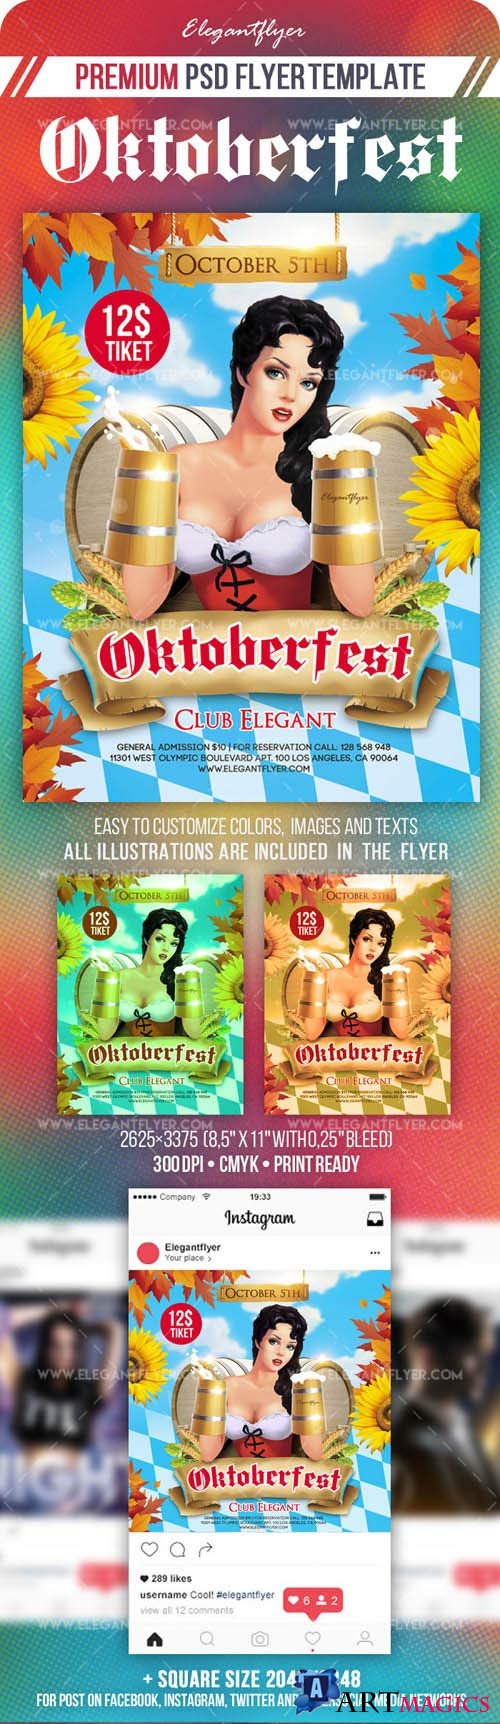 Oktoberfest Flyer PSD Template Instagram template